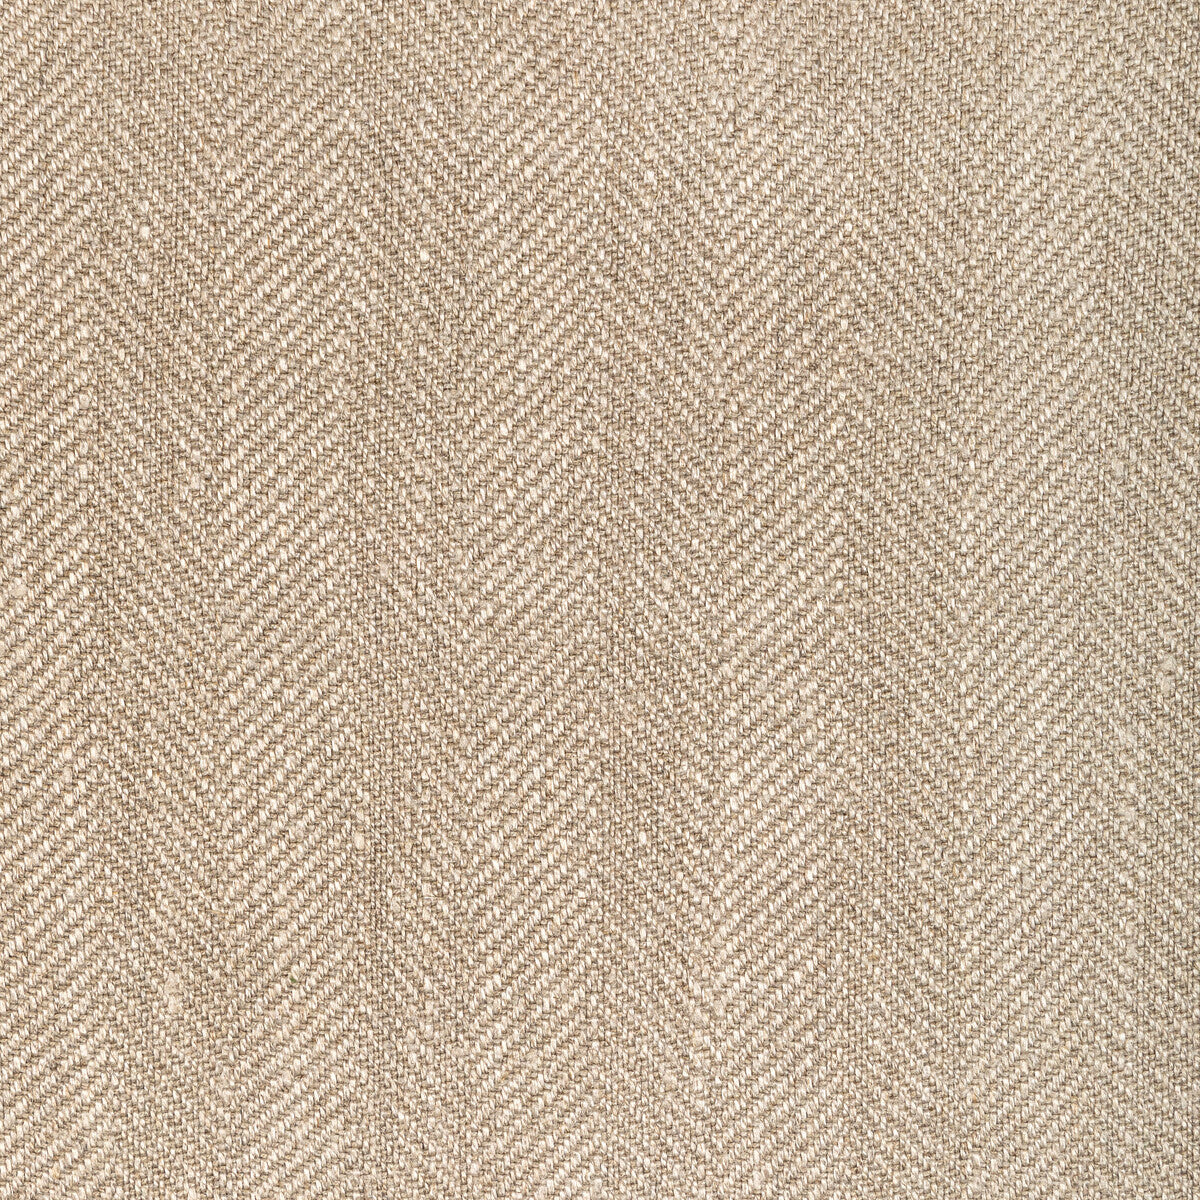 Kravet Basics fabric in 36343-16 color - pattern 36343.16.0 - by Kravet Basics